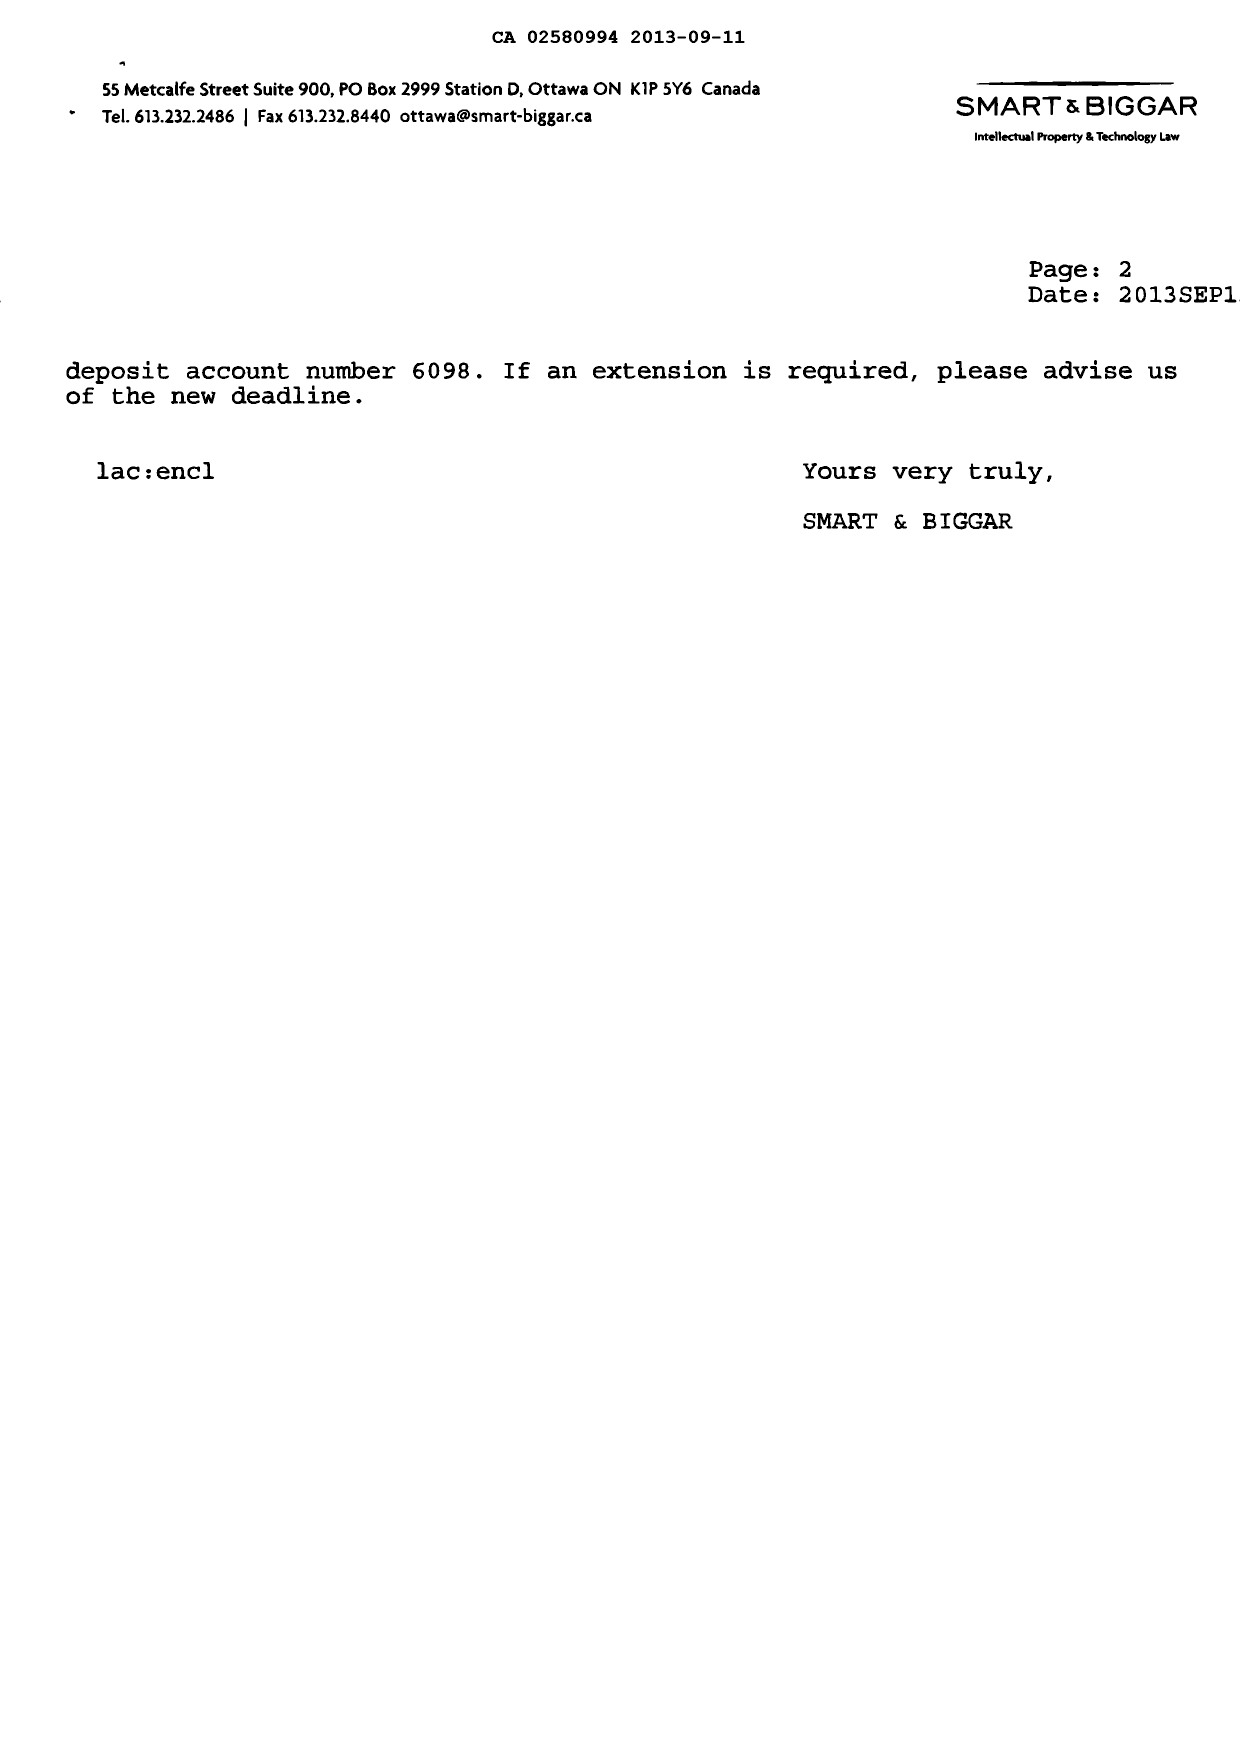 Document de brevet canadien 2580994. Taxes 20130911. Image 2 de 2